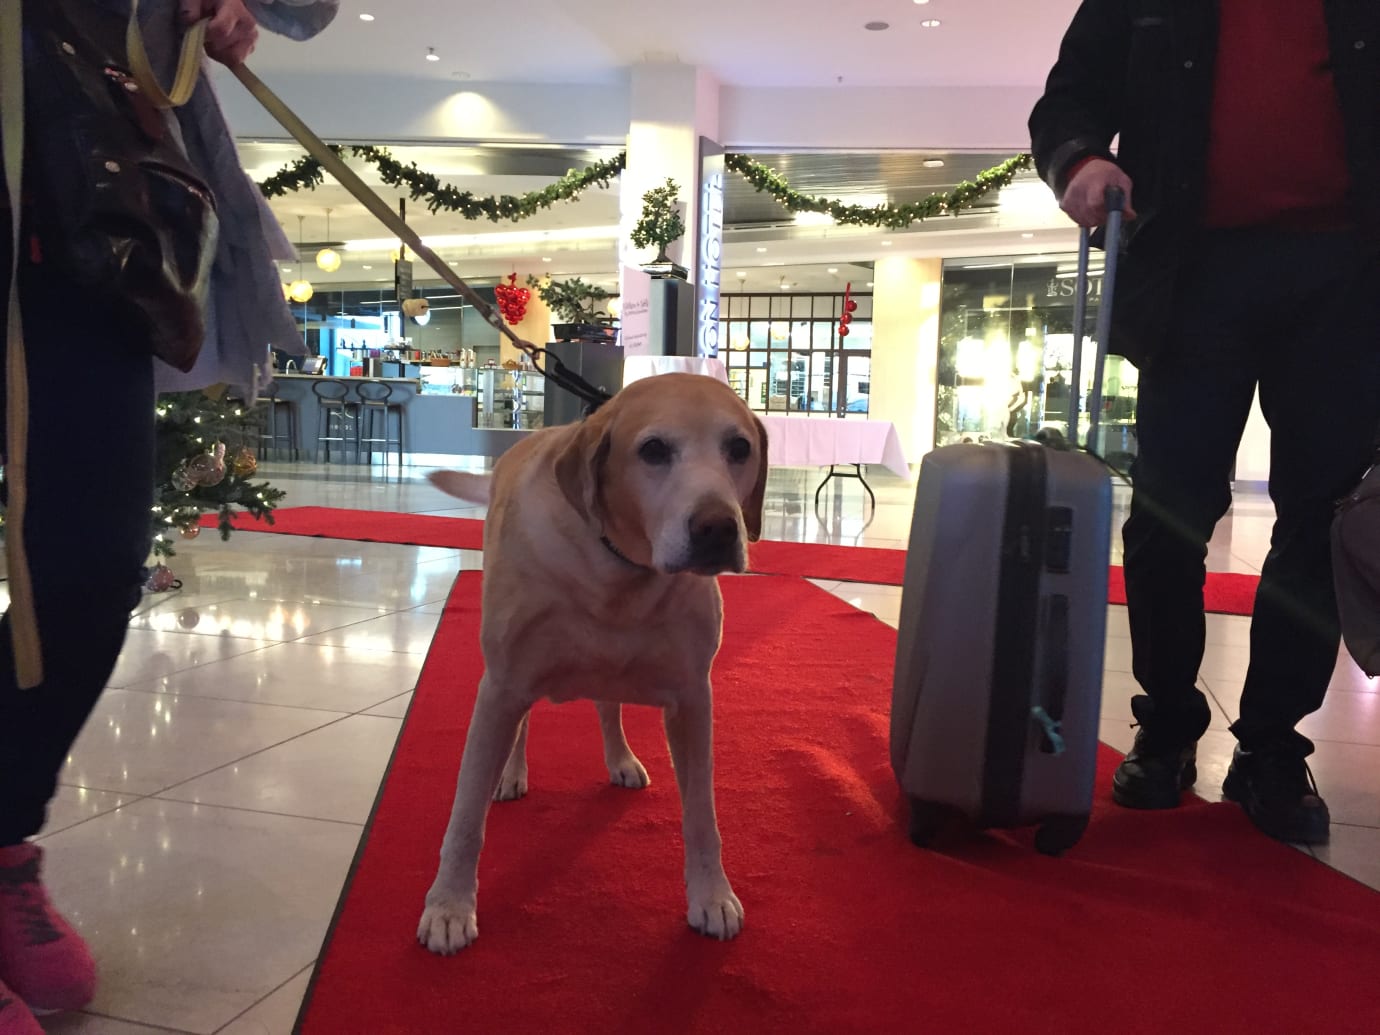 hjort indhente Forekomme Clarion Hotel Arlanda Airport slår rekord med 370 hundar på nyårsafton |  Djurens Rätt